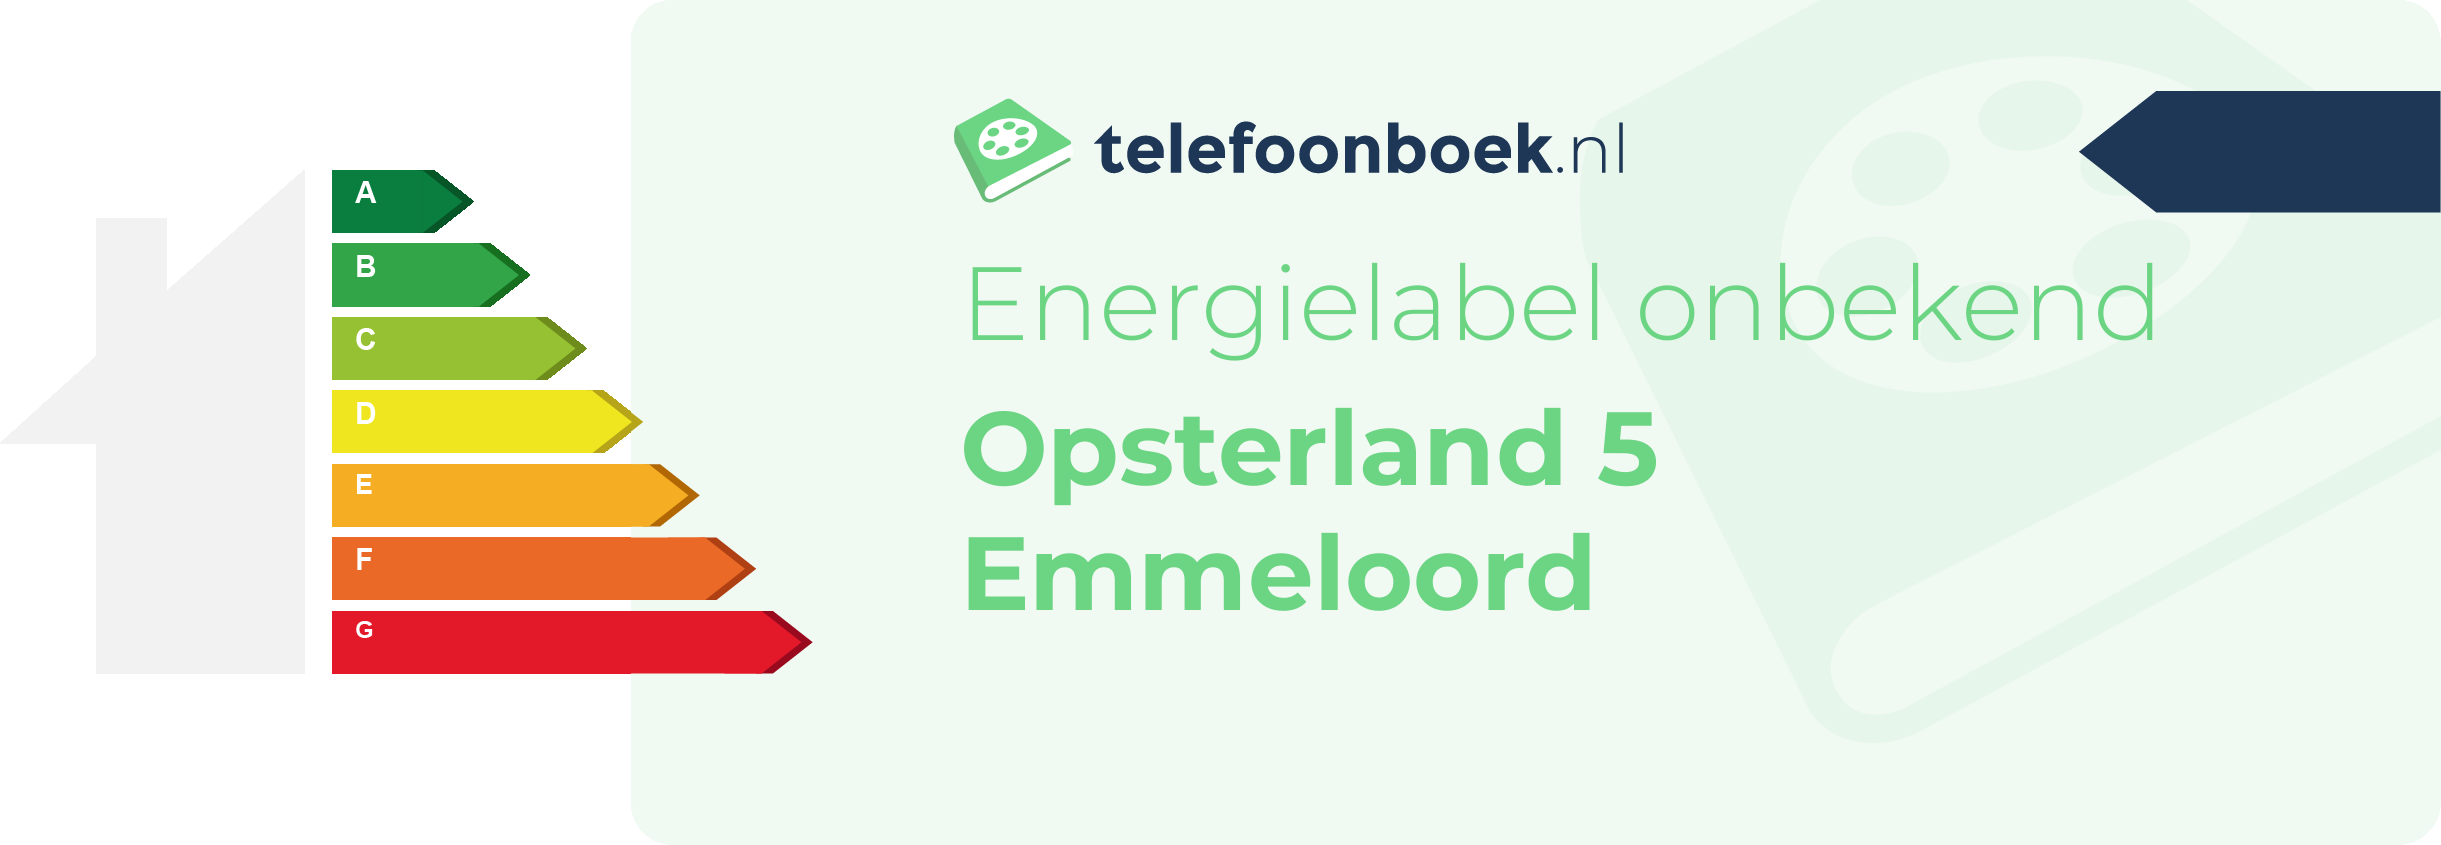 Energielabel Opsterland 5 Emmeloord